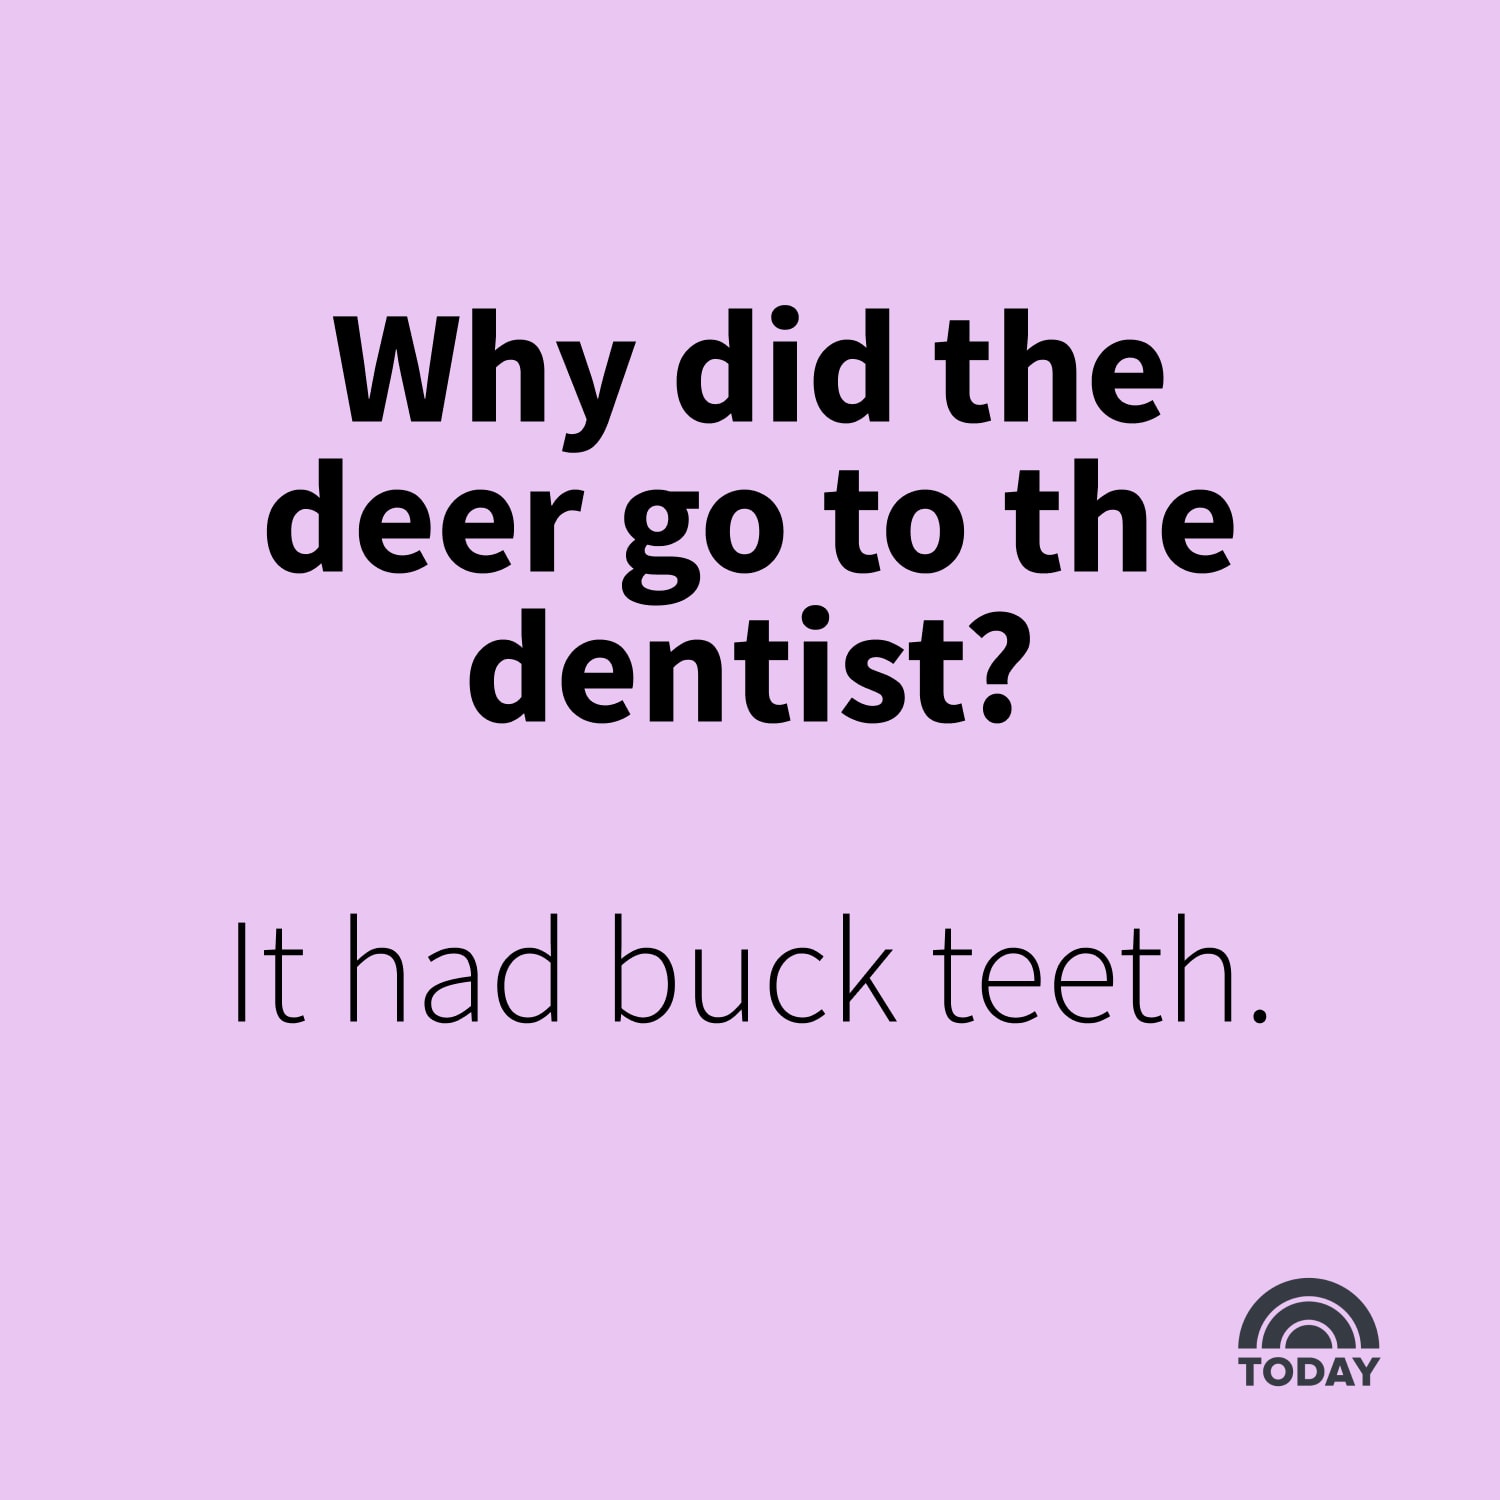 dentist jokes for kids